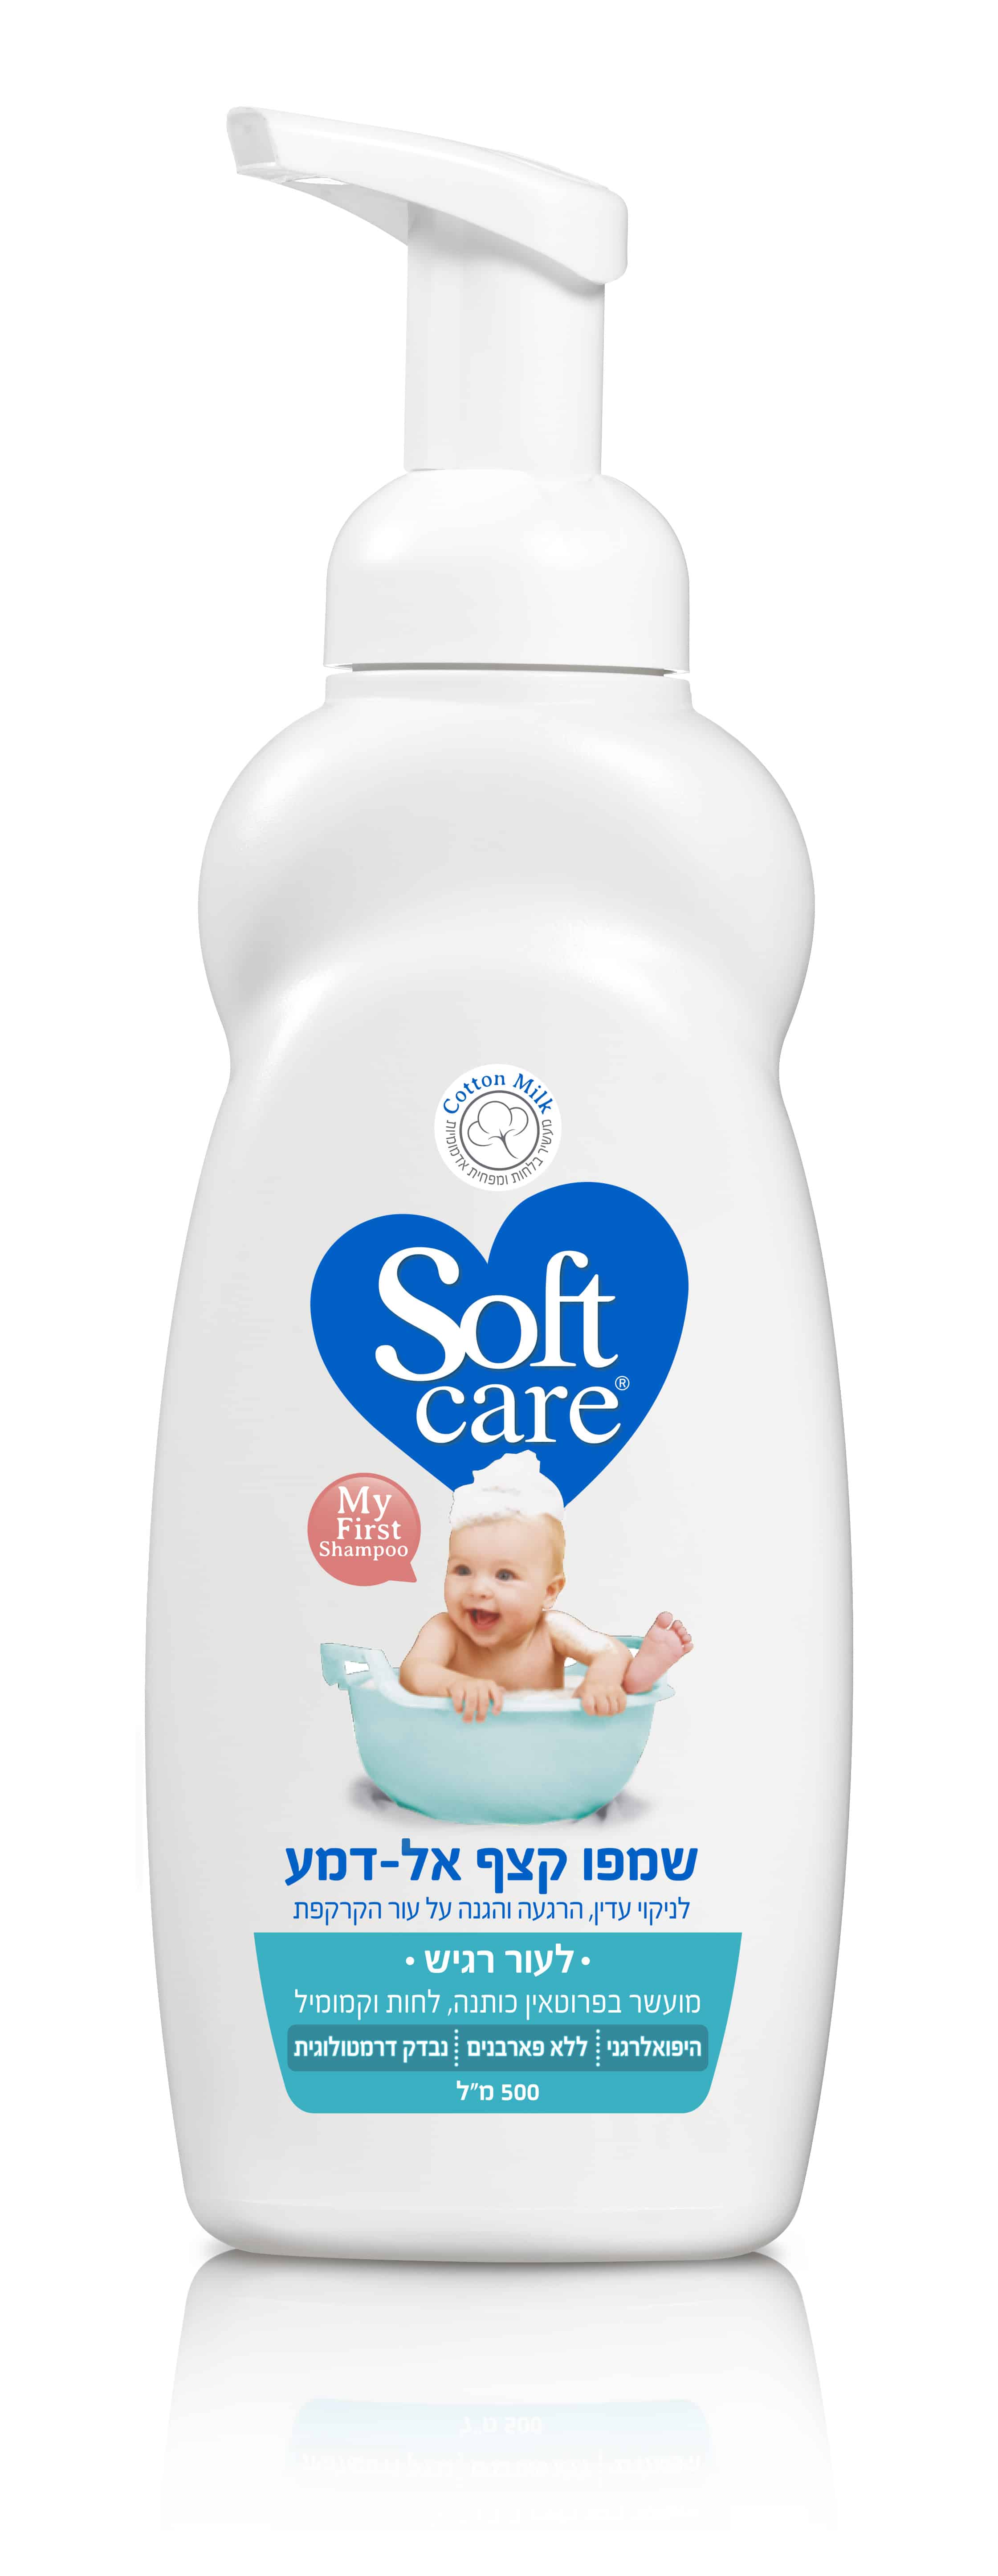 שמפו קצף לתינוקות מבית SOFTCARE מחיר 19.90 שח צילום מוטי פישביין